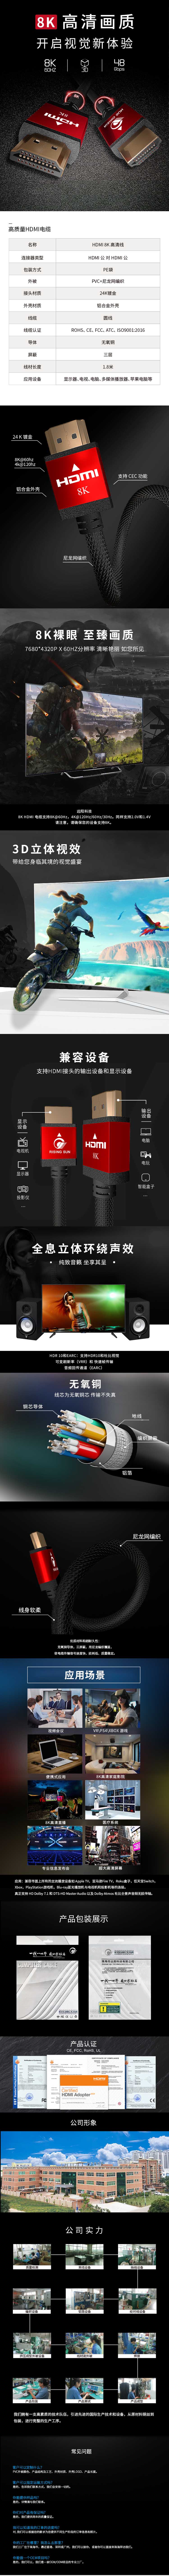 2.1V HDMI中文.jpg